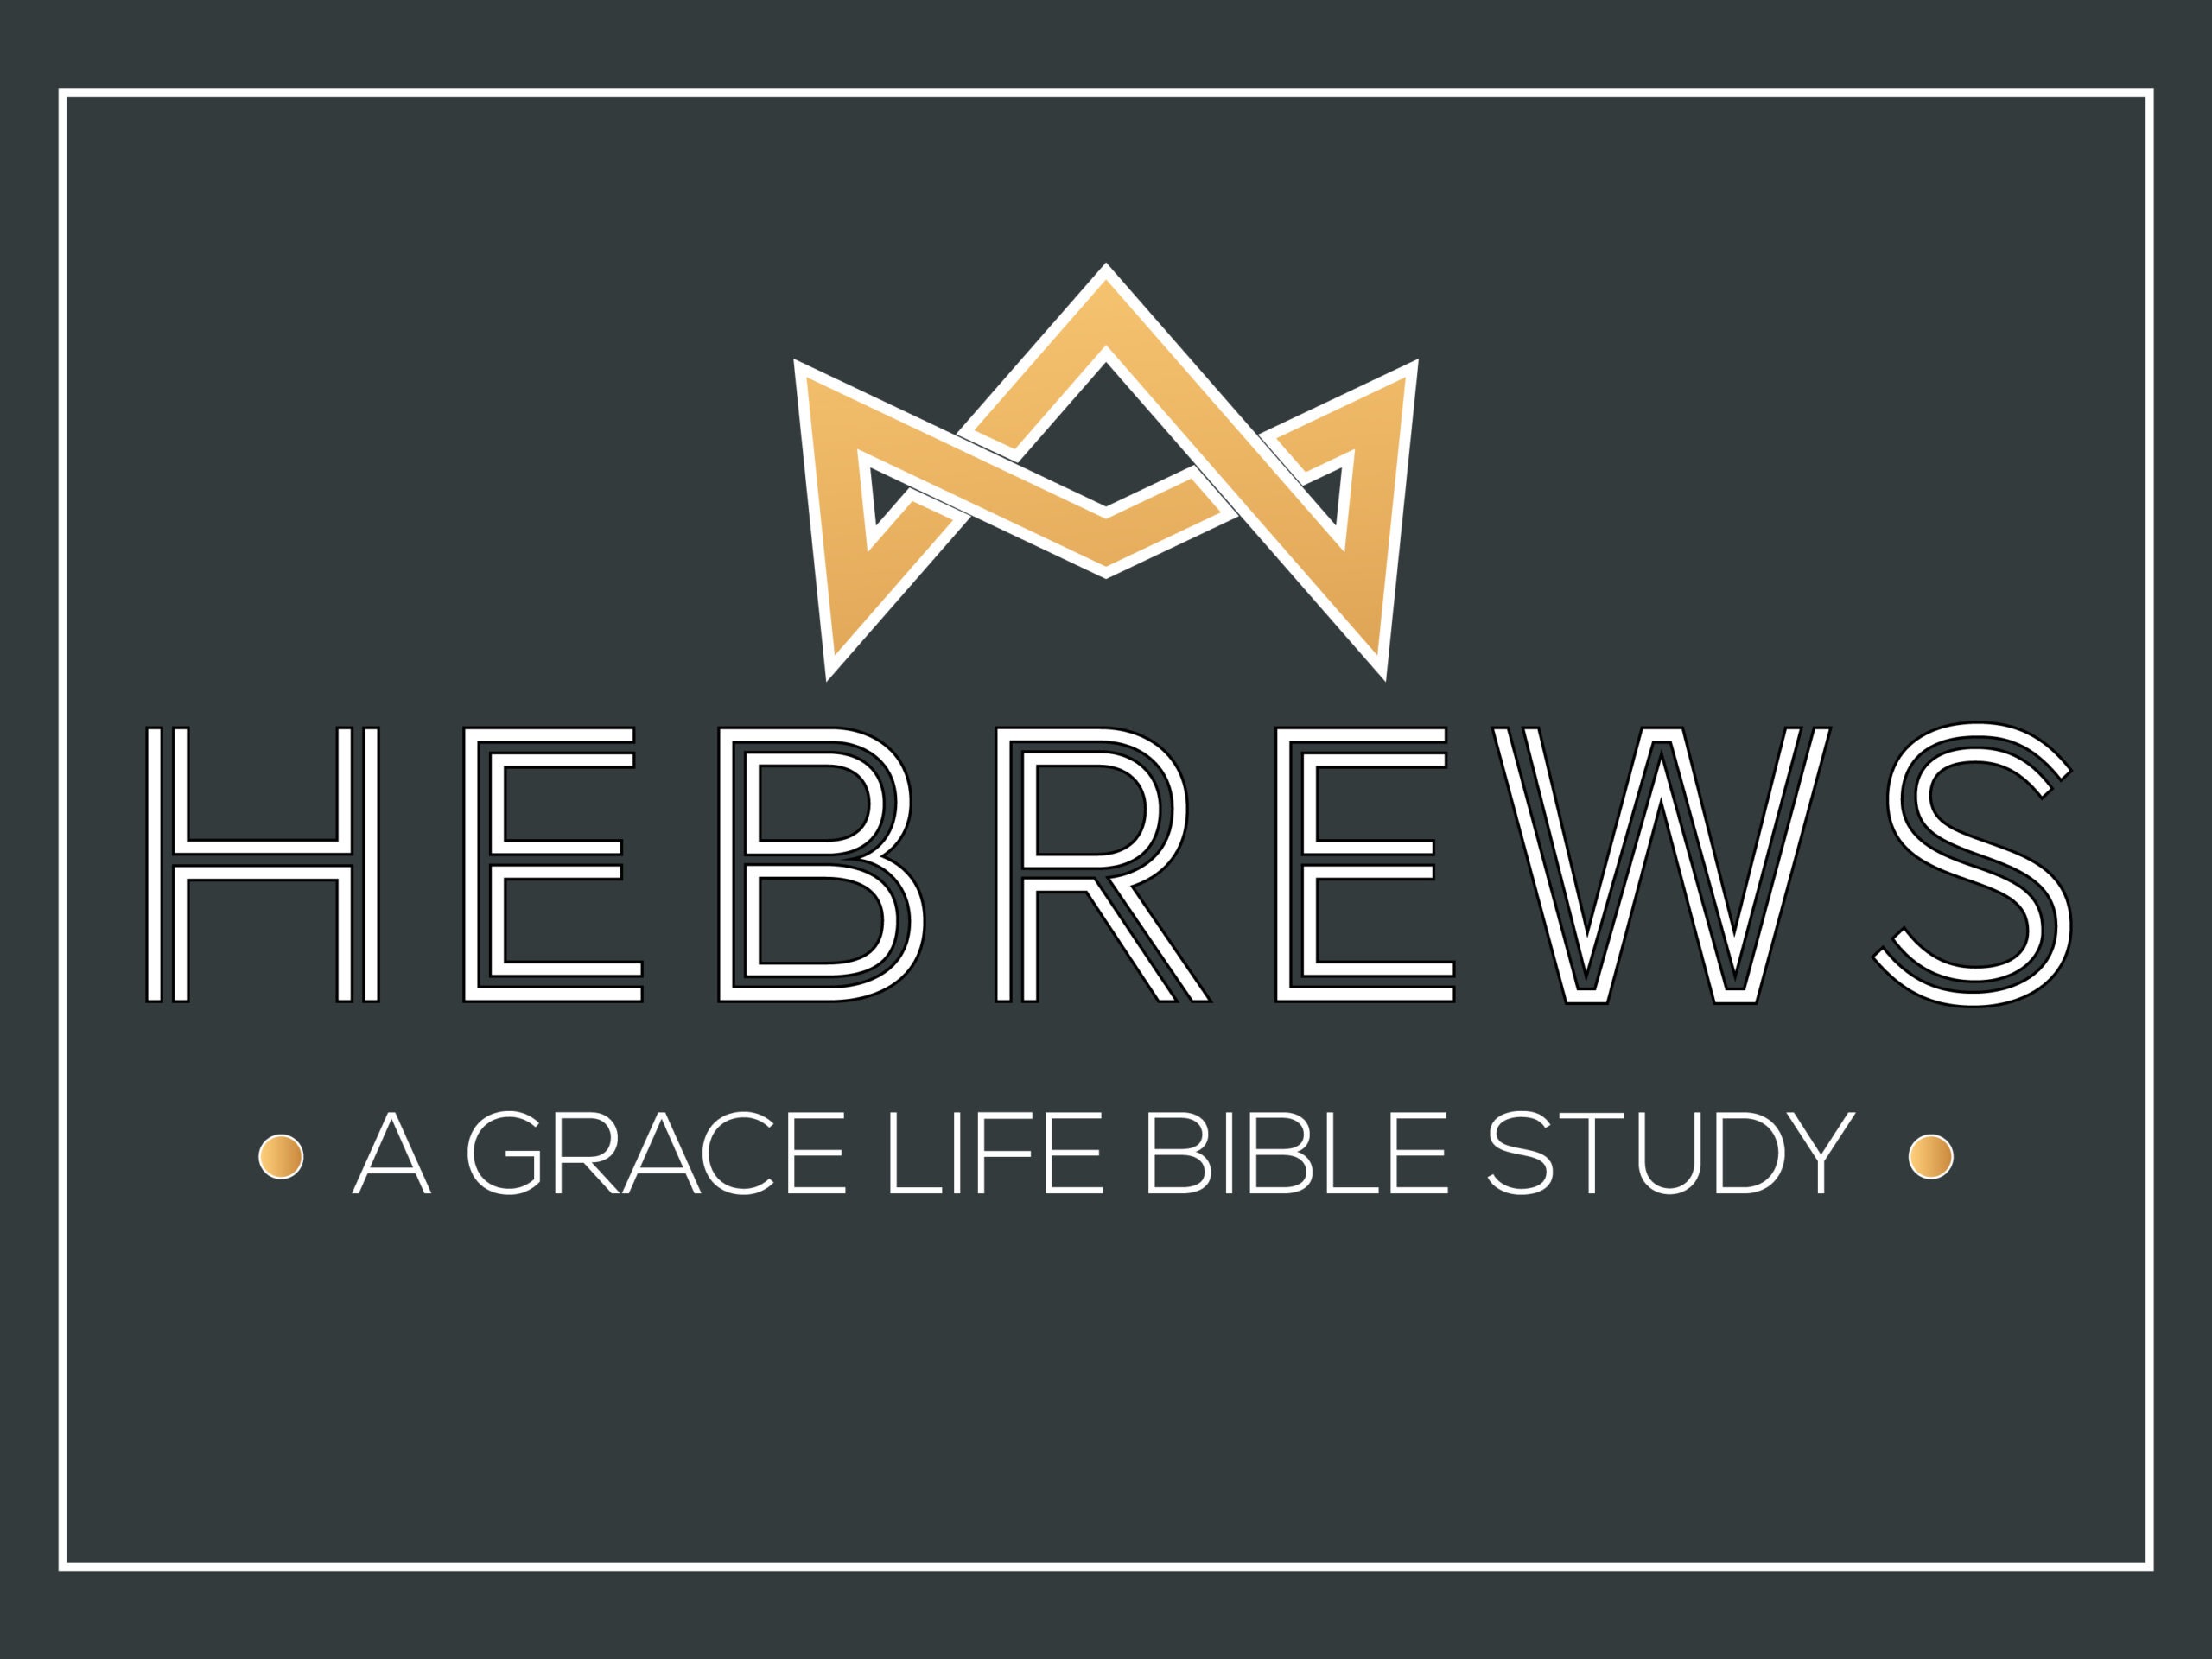 A Study on Hebrews 11:1-31